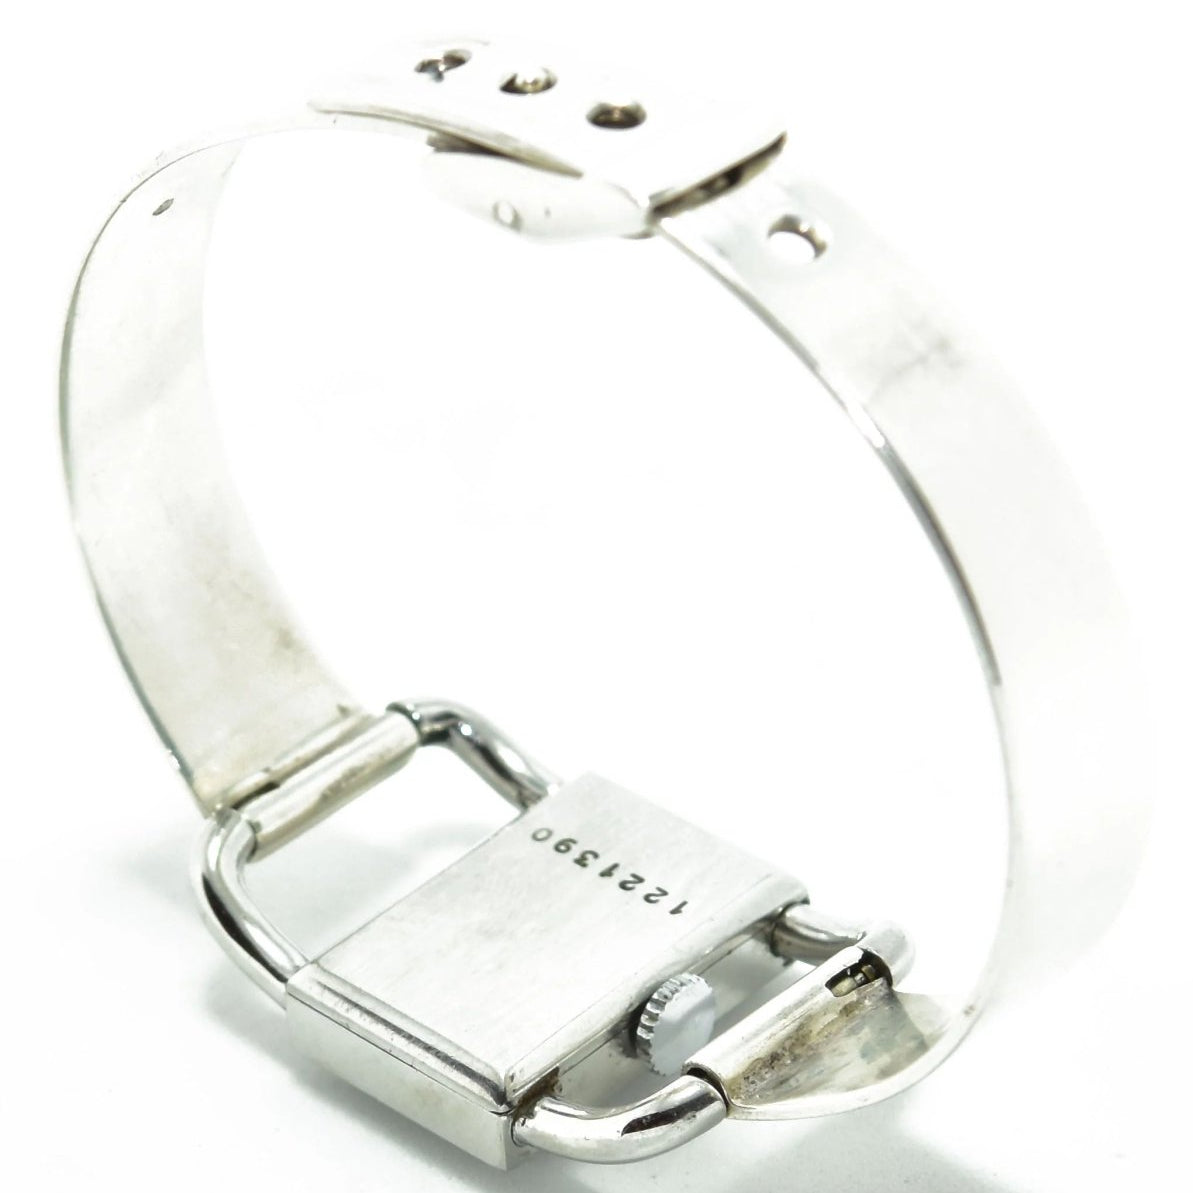 Montre bracelet Jaeger Lecoultre modèle Etrier pour la maison Hermès - Castafiore